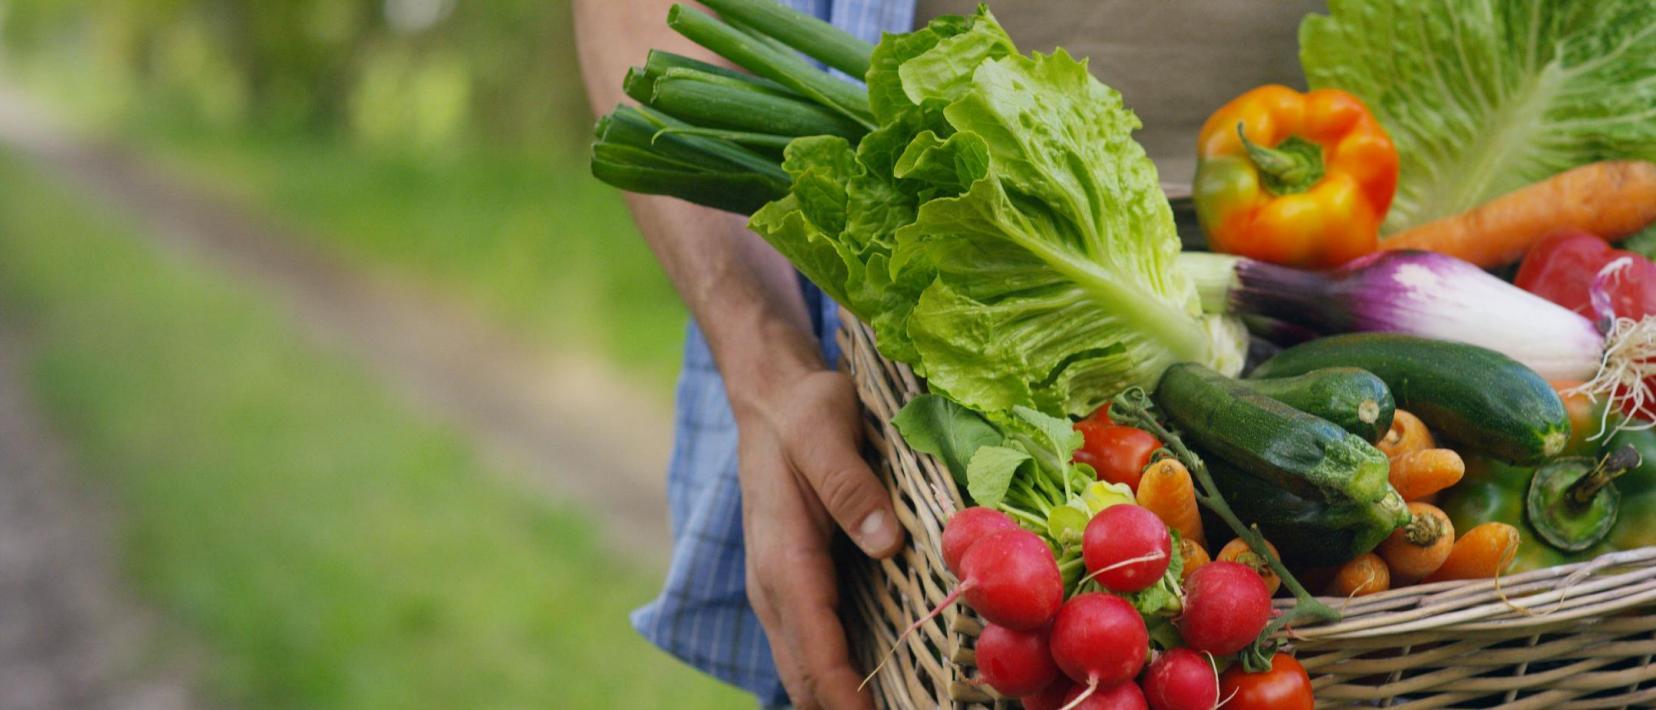 Ein Bauer trägt einen Korb voll frischem Gemüse: Radieschen, Salat, Peperoni, Zucchetti etc.